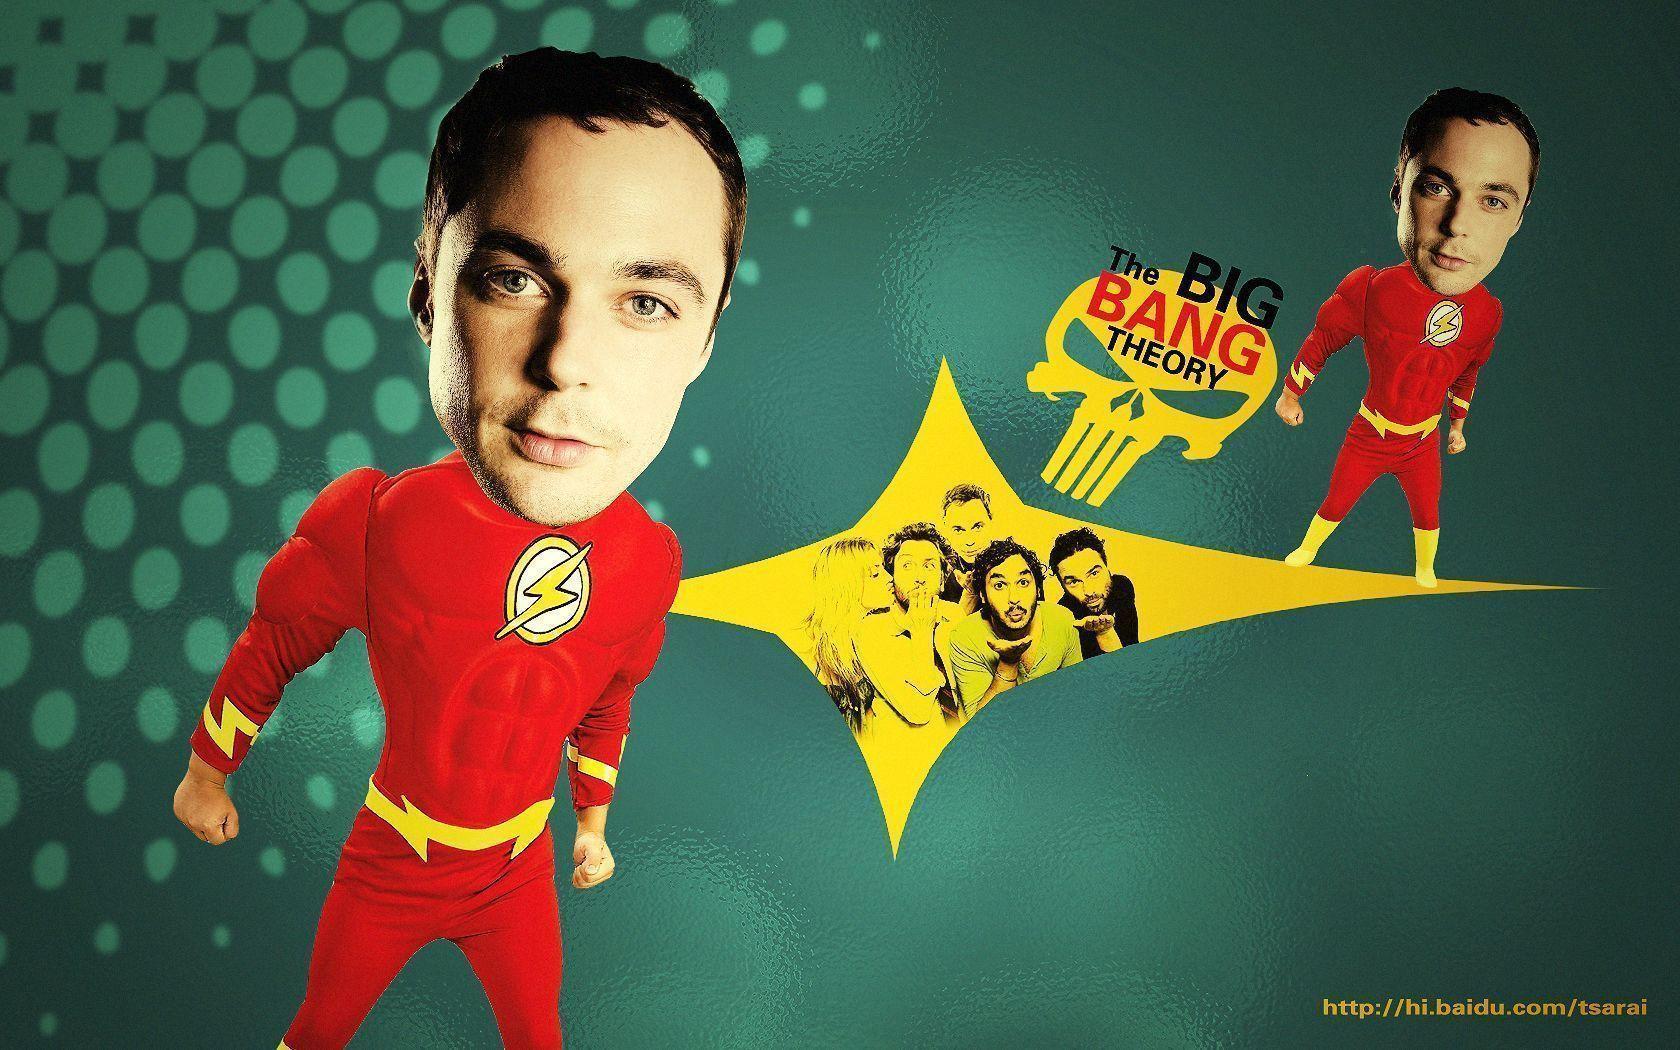 Fondos de pantalla de The Big Bang Theory. Wallpaper de The Big